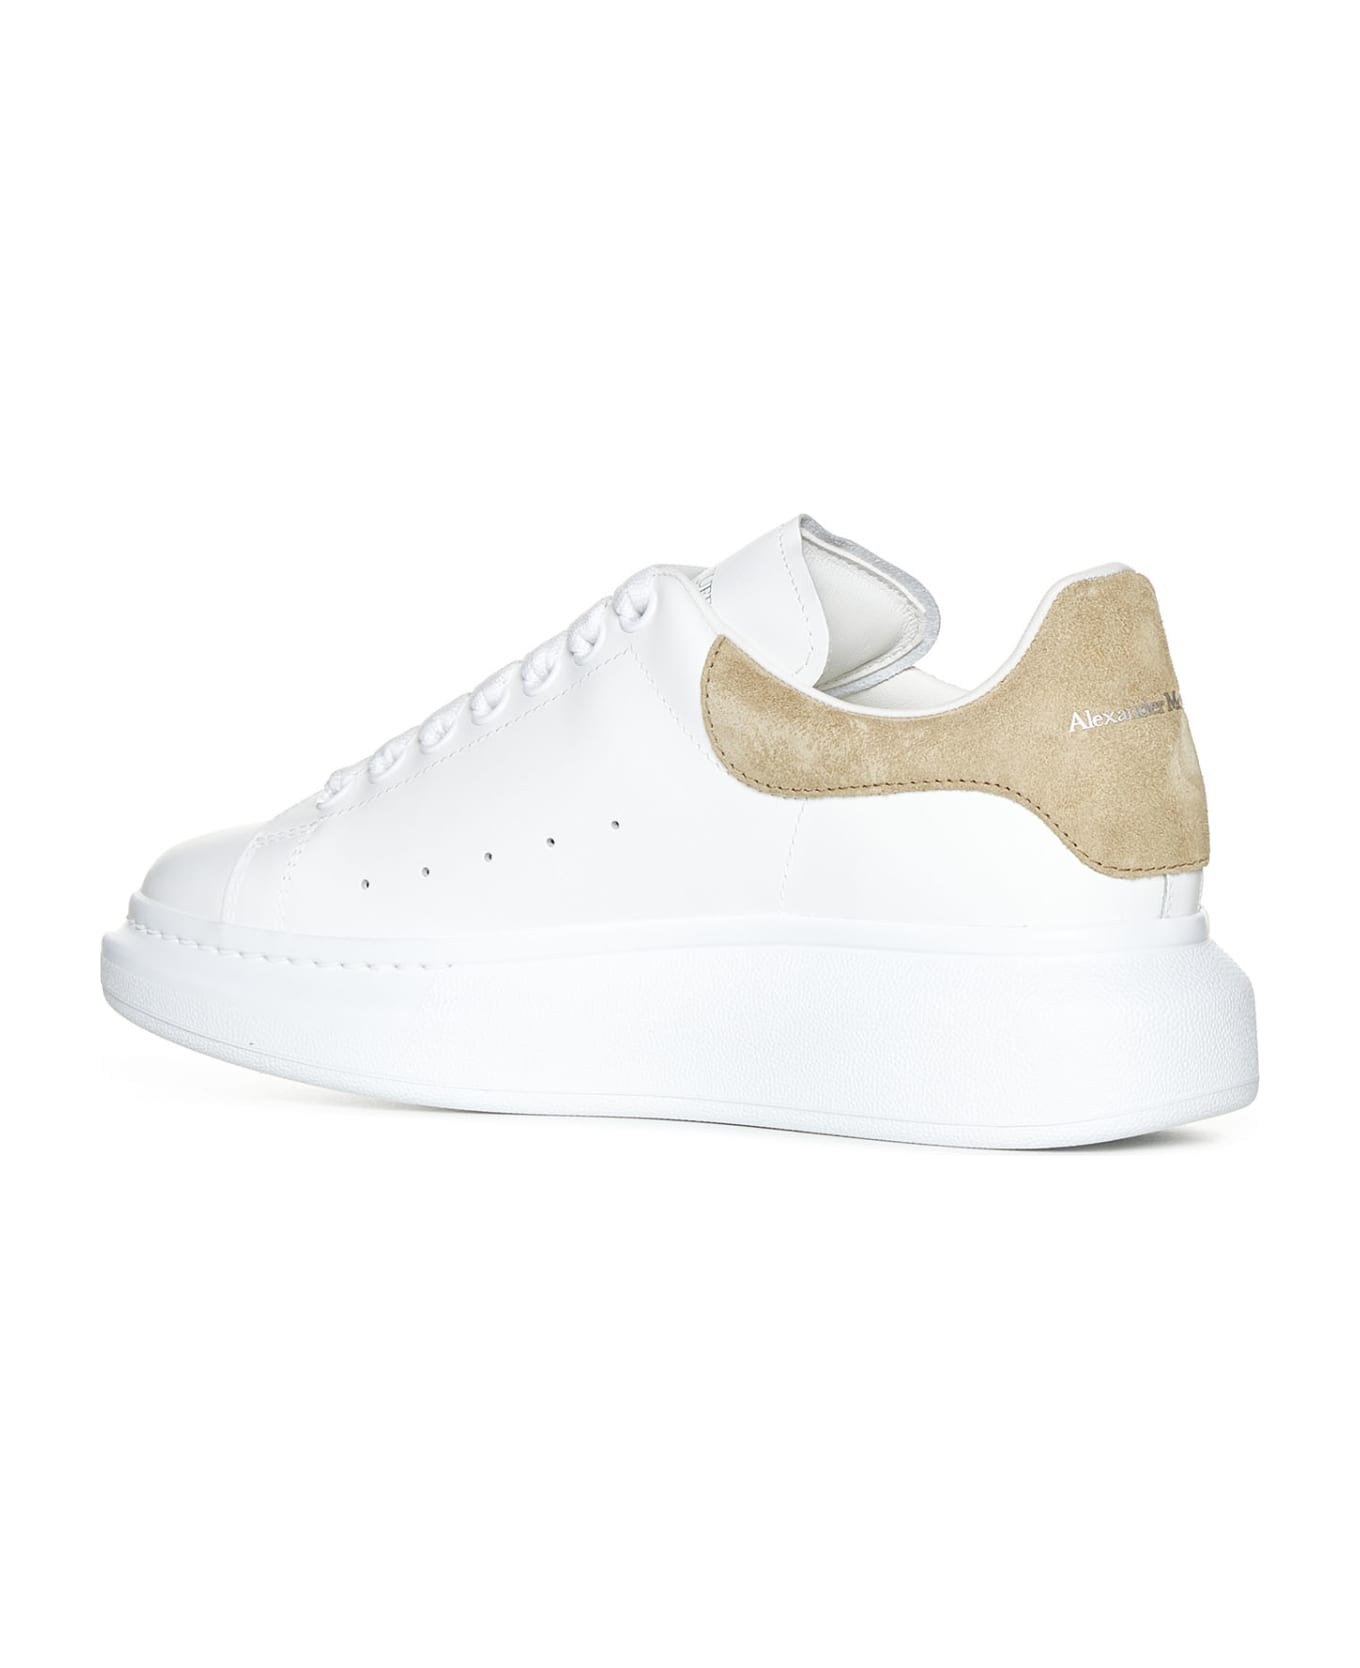 Alexander McQueen Sneakers - White/beige